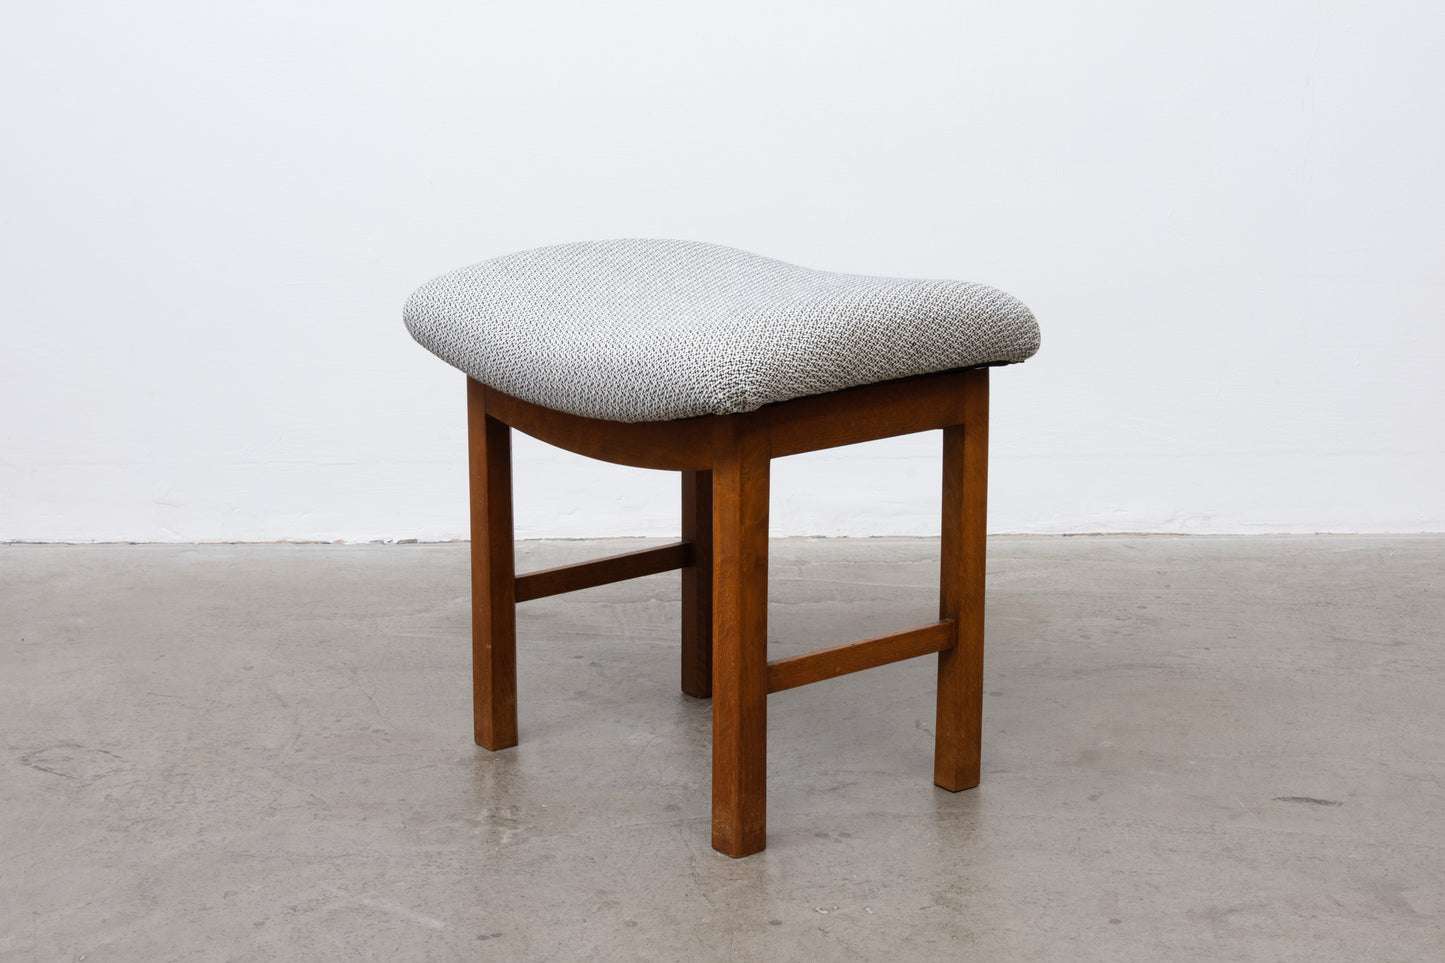 1950s Danish stool